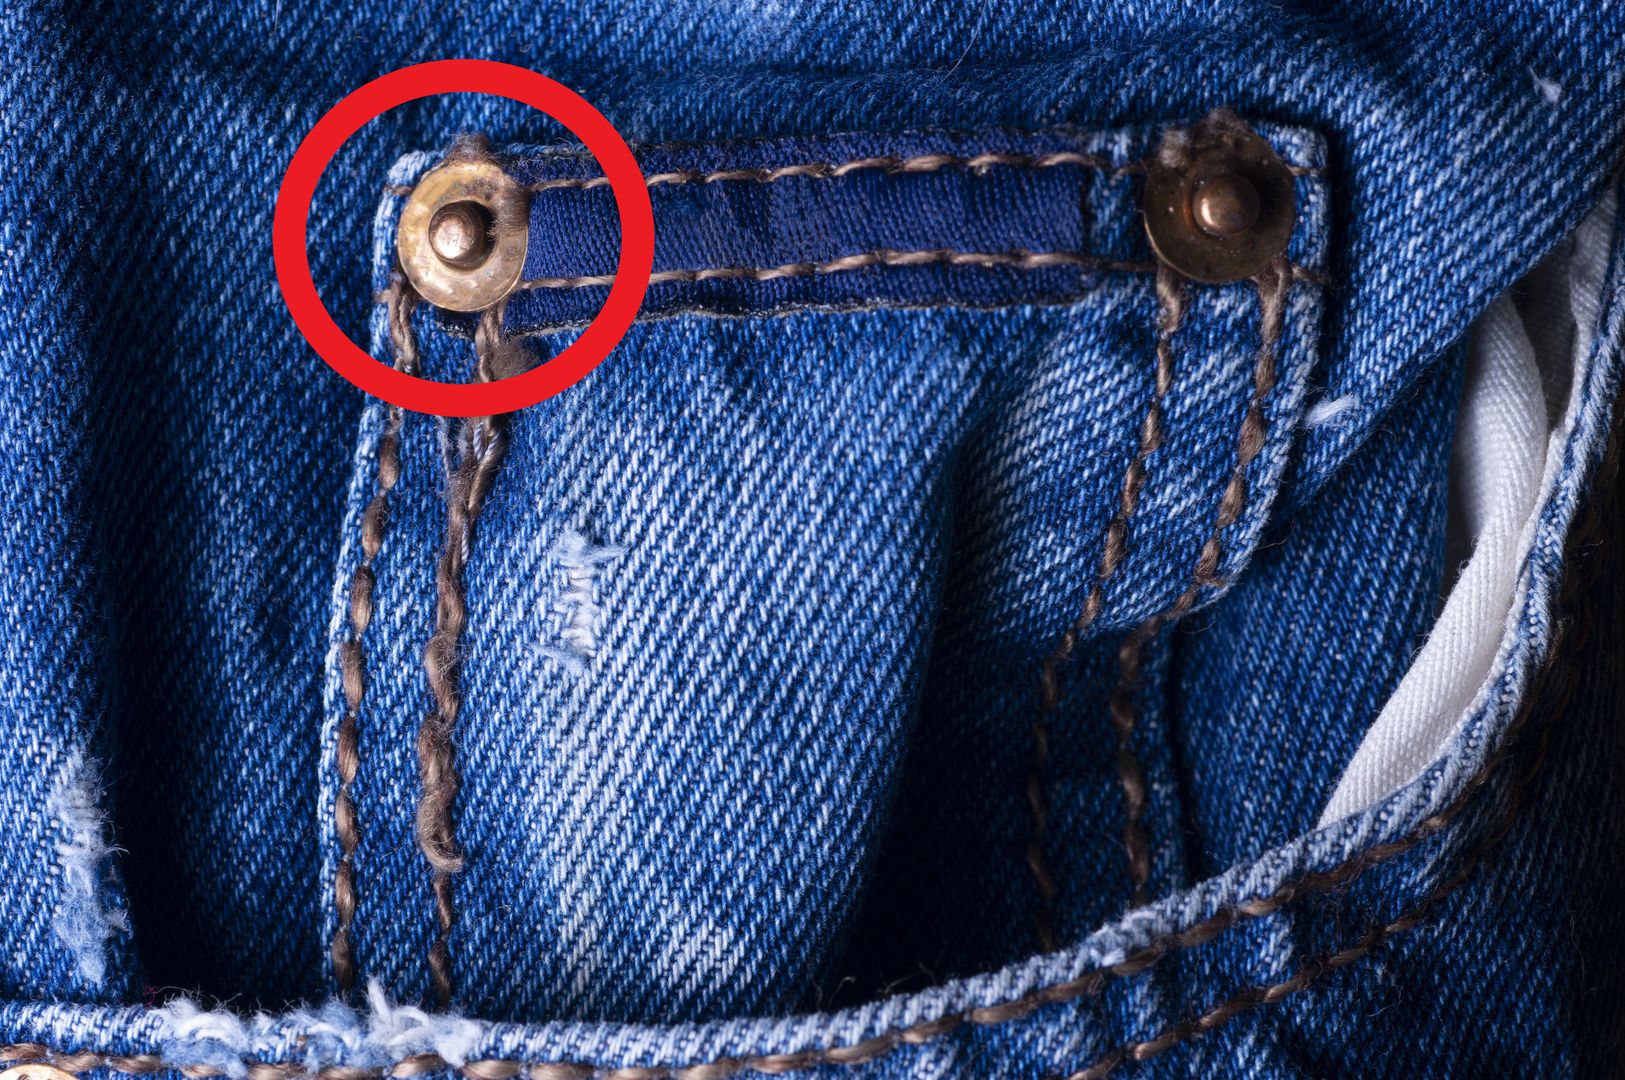 Małe guziczki przy kieszonkach jeansów. Mają jedno konkretne zastosowanie